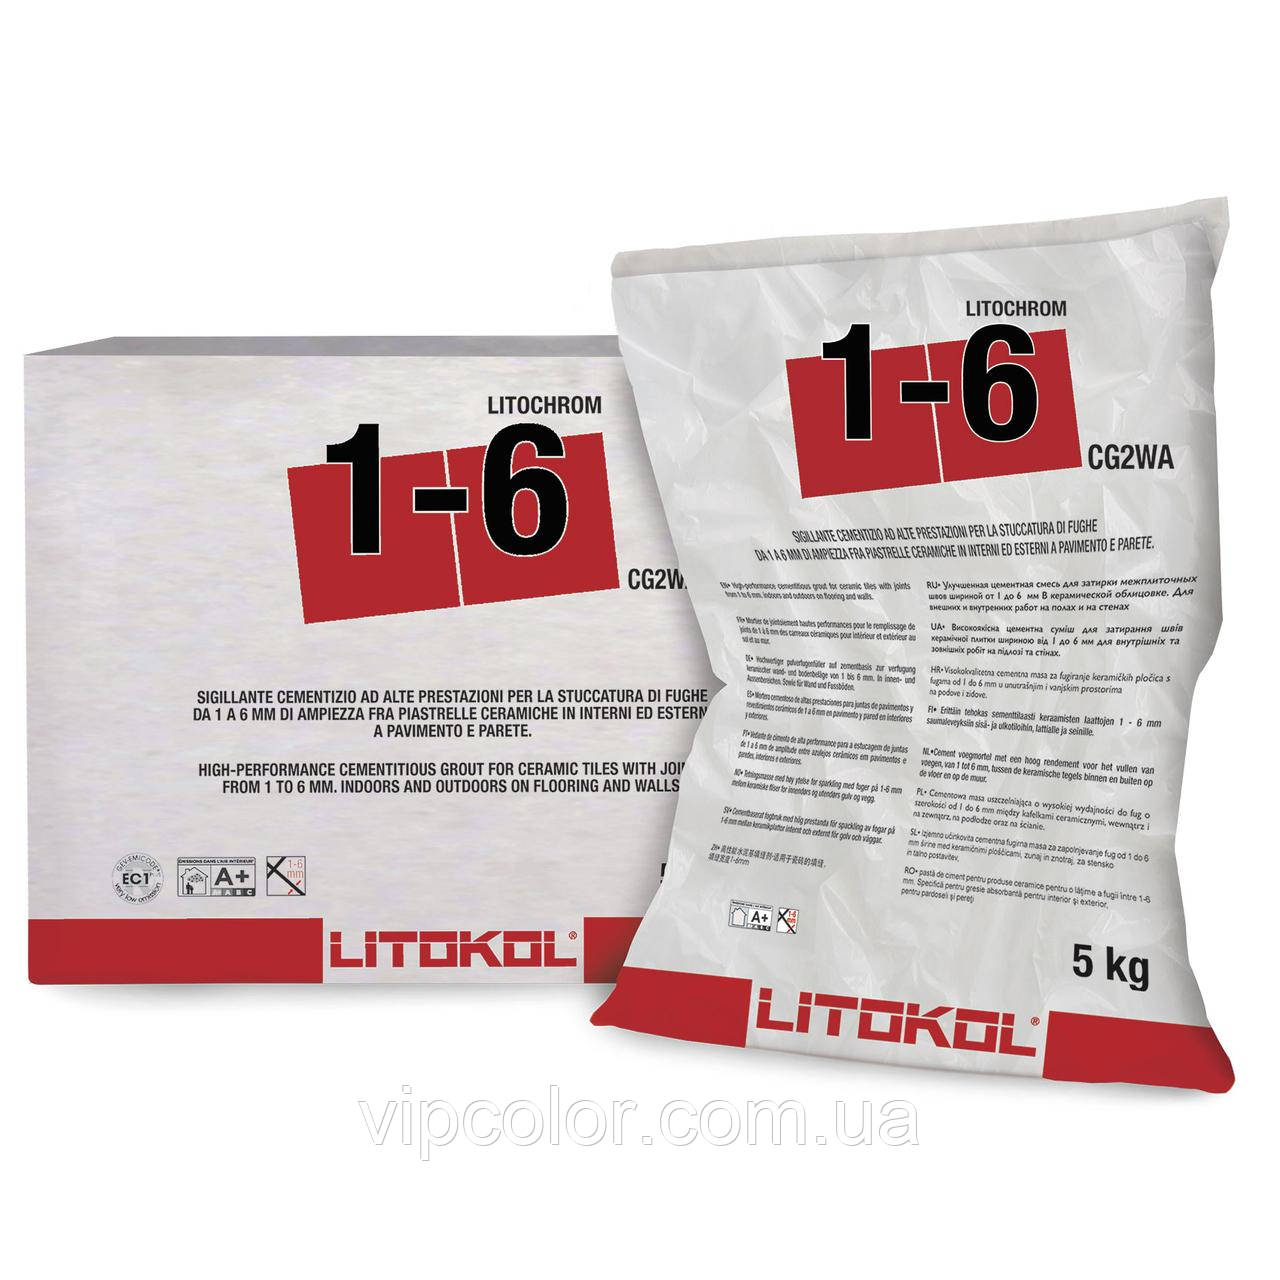  Litochrom 1-6 смесь на цементной основе С50 Жасмин 5 кг  .